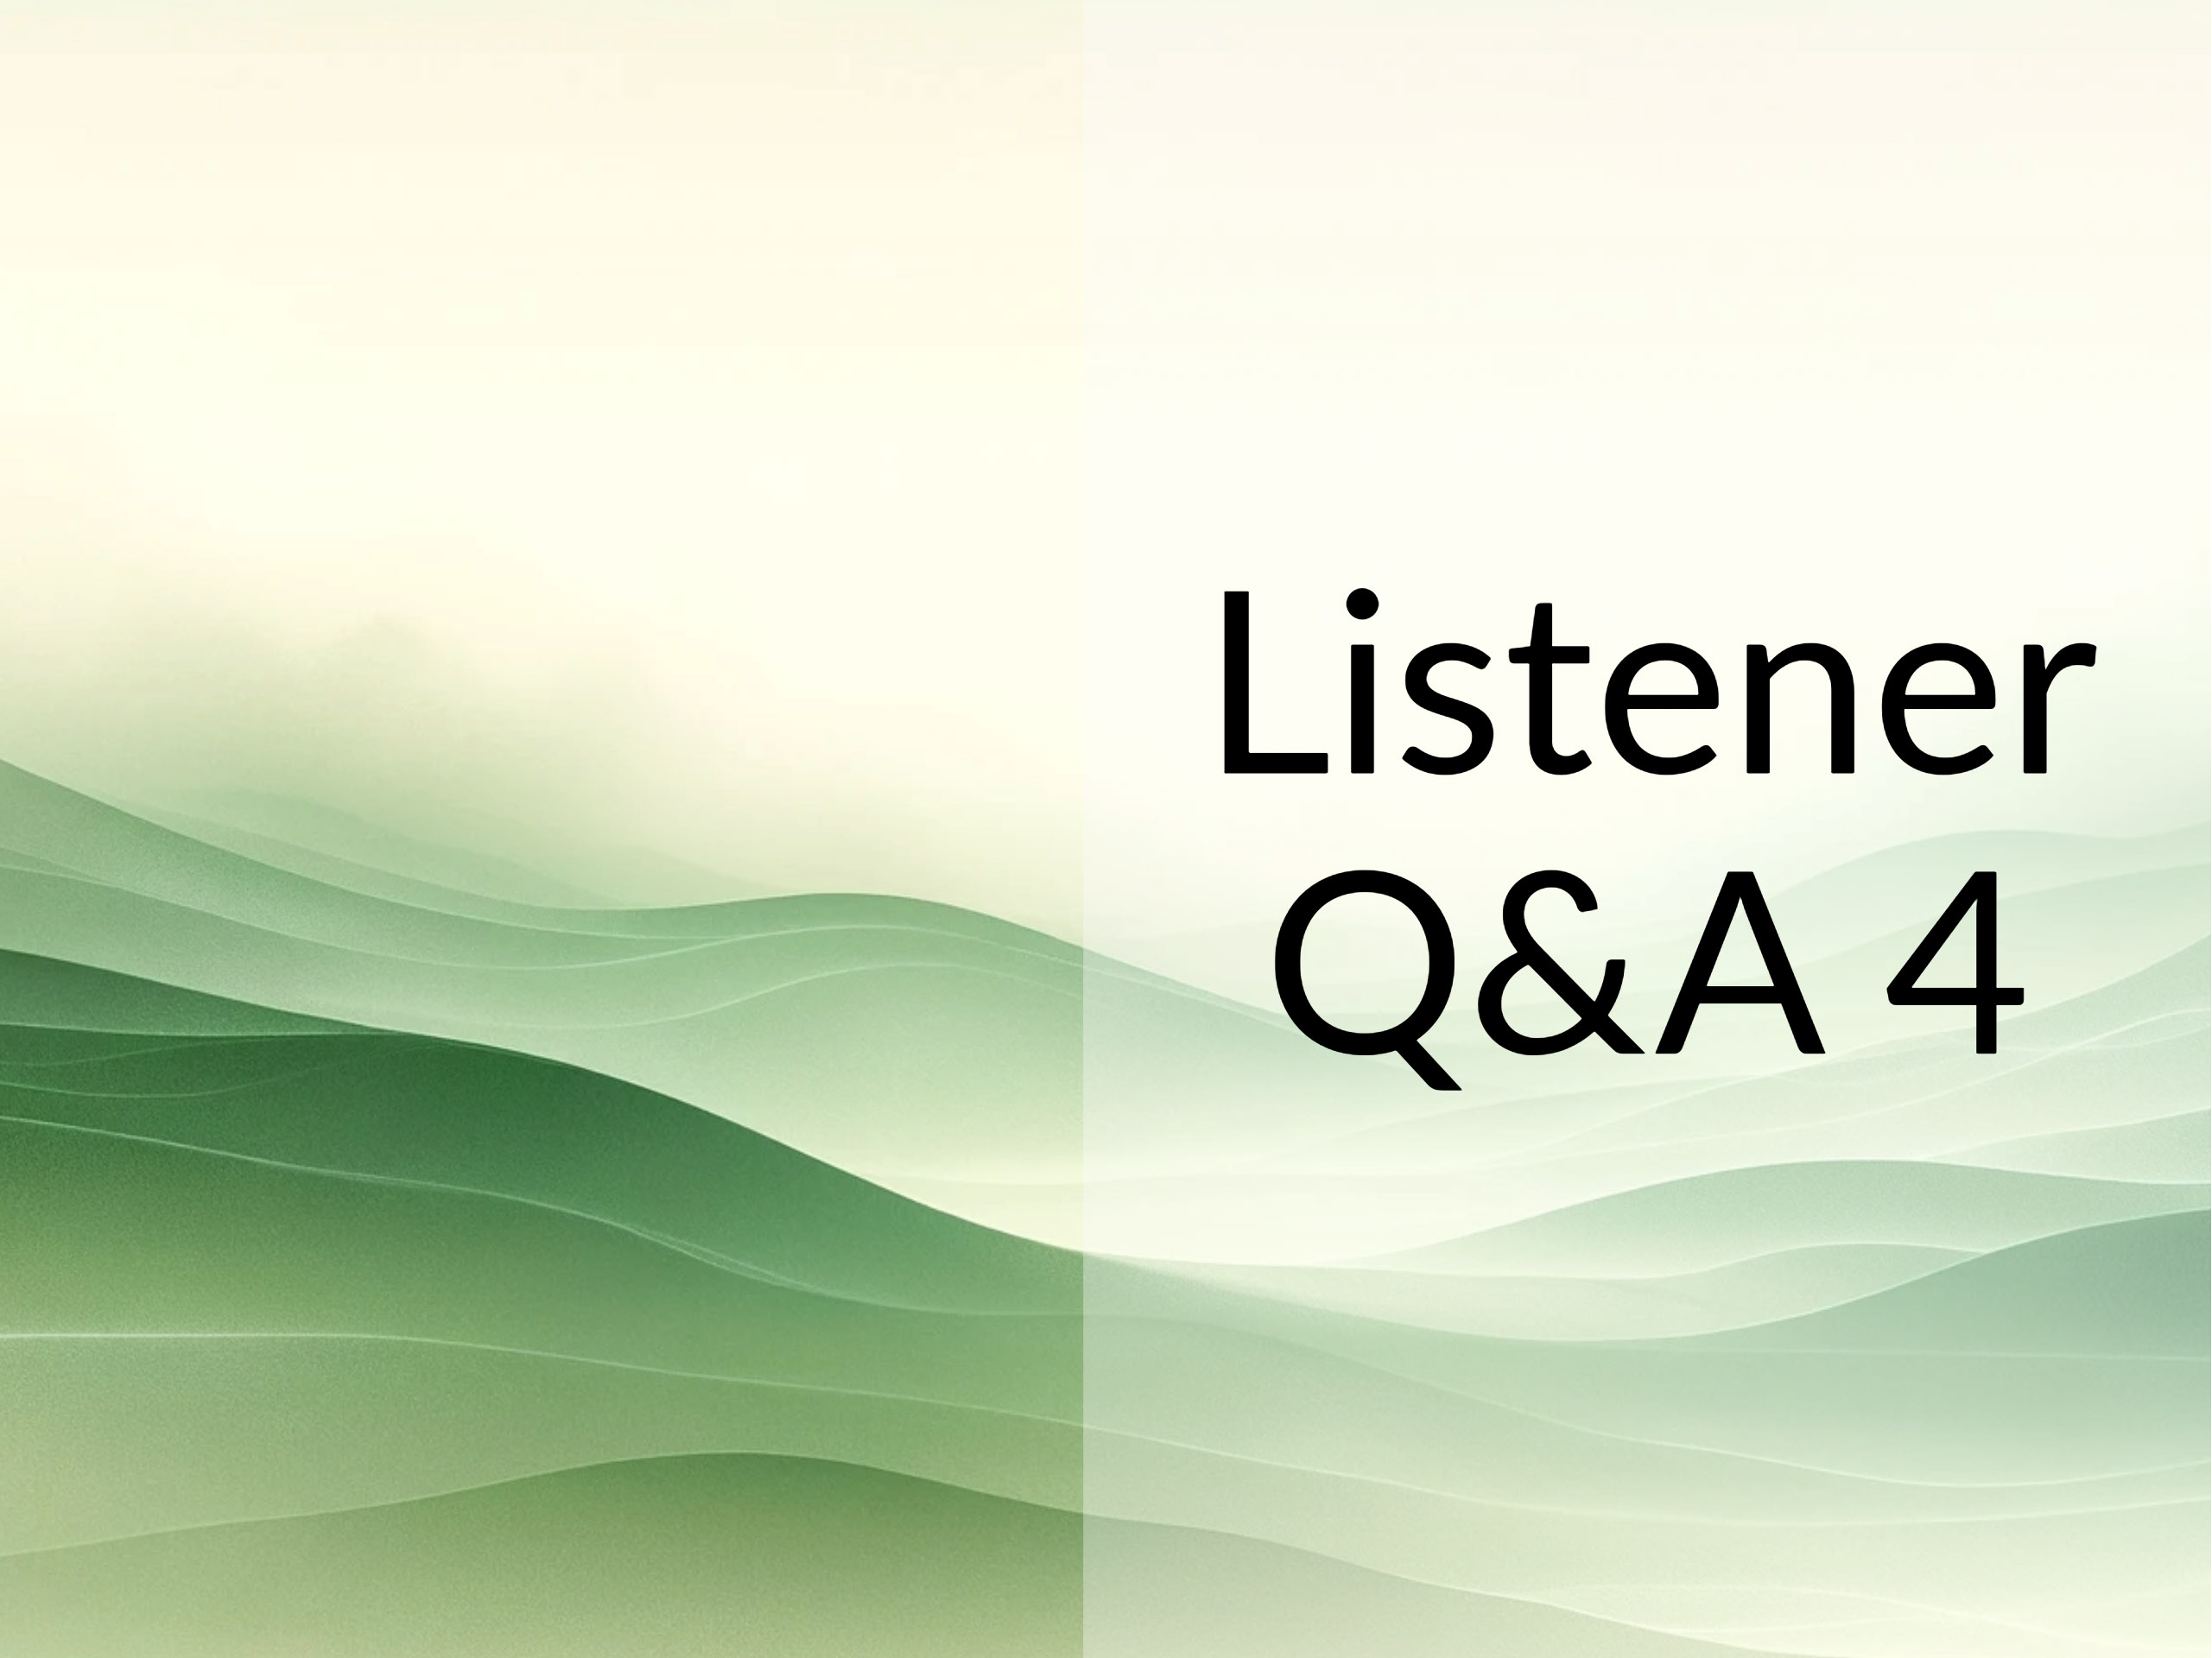 459: Listener Q&A 4